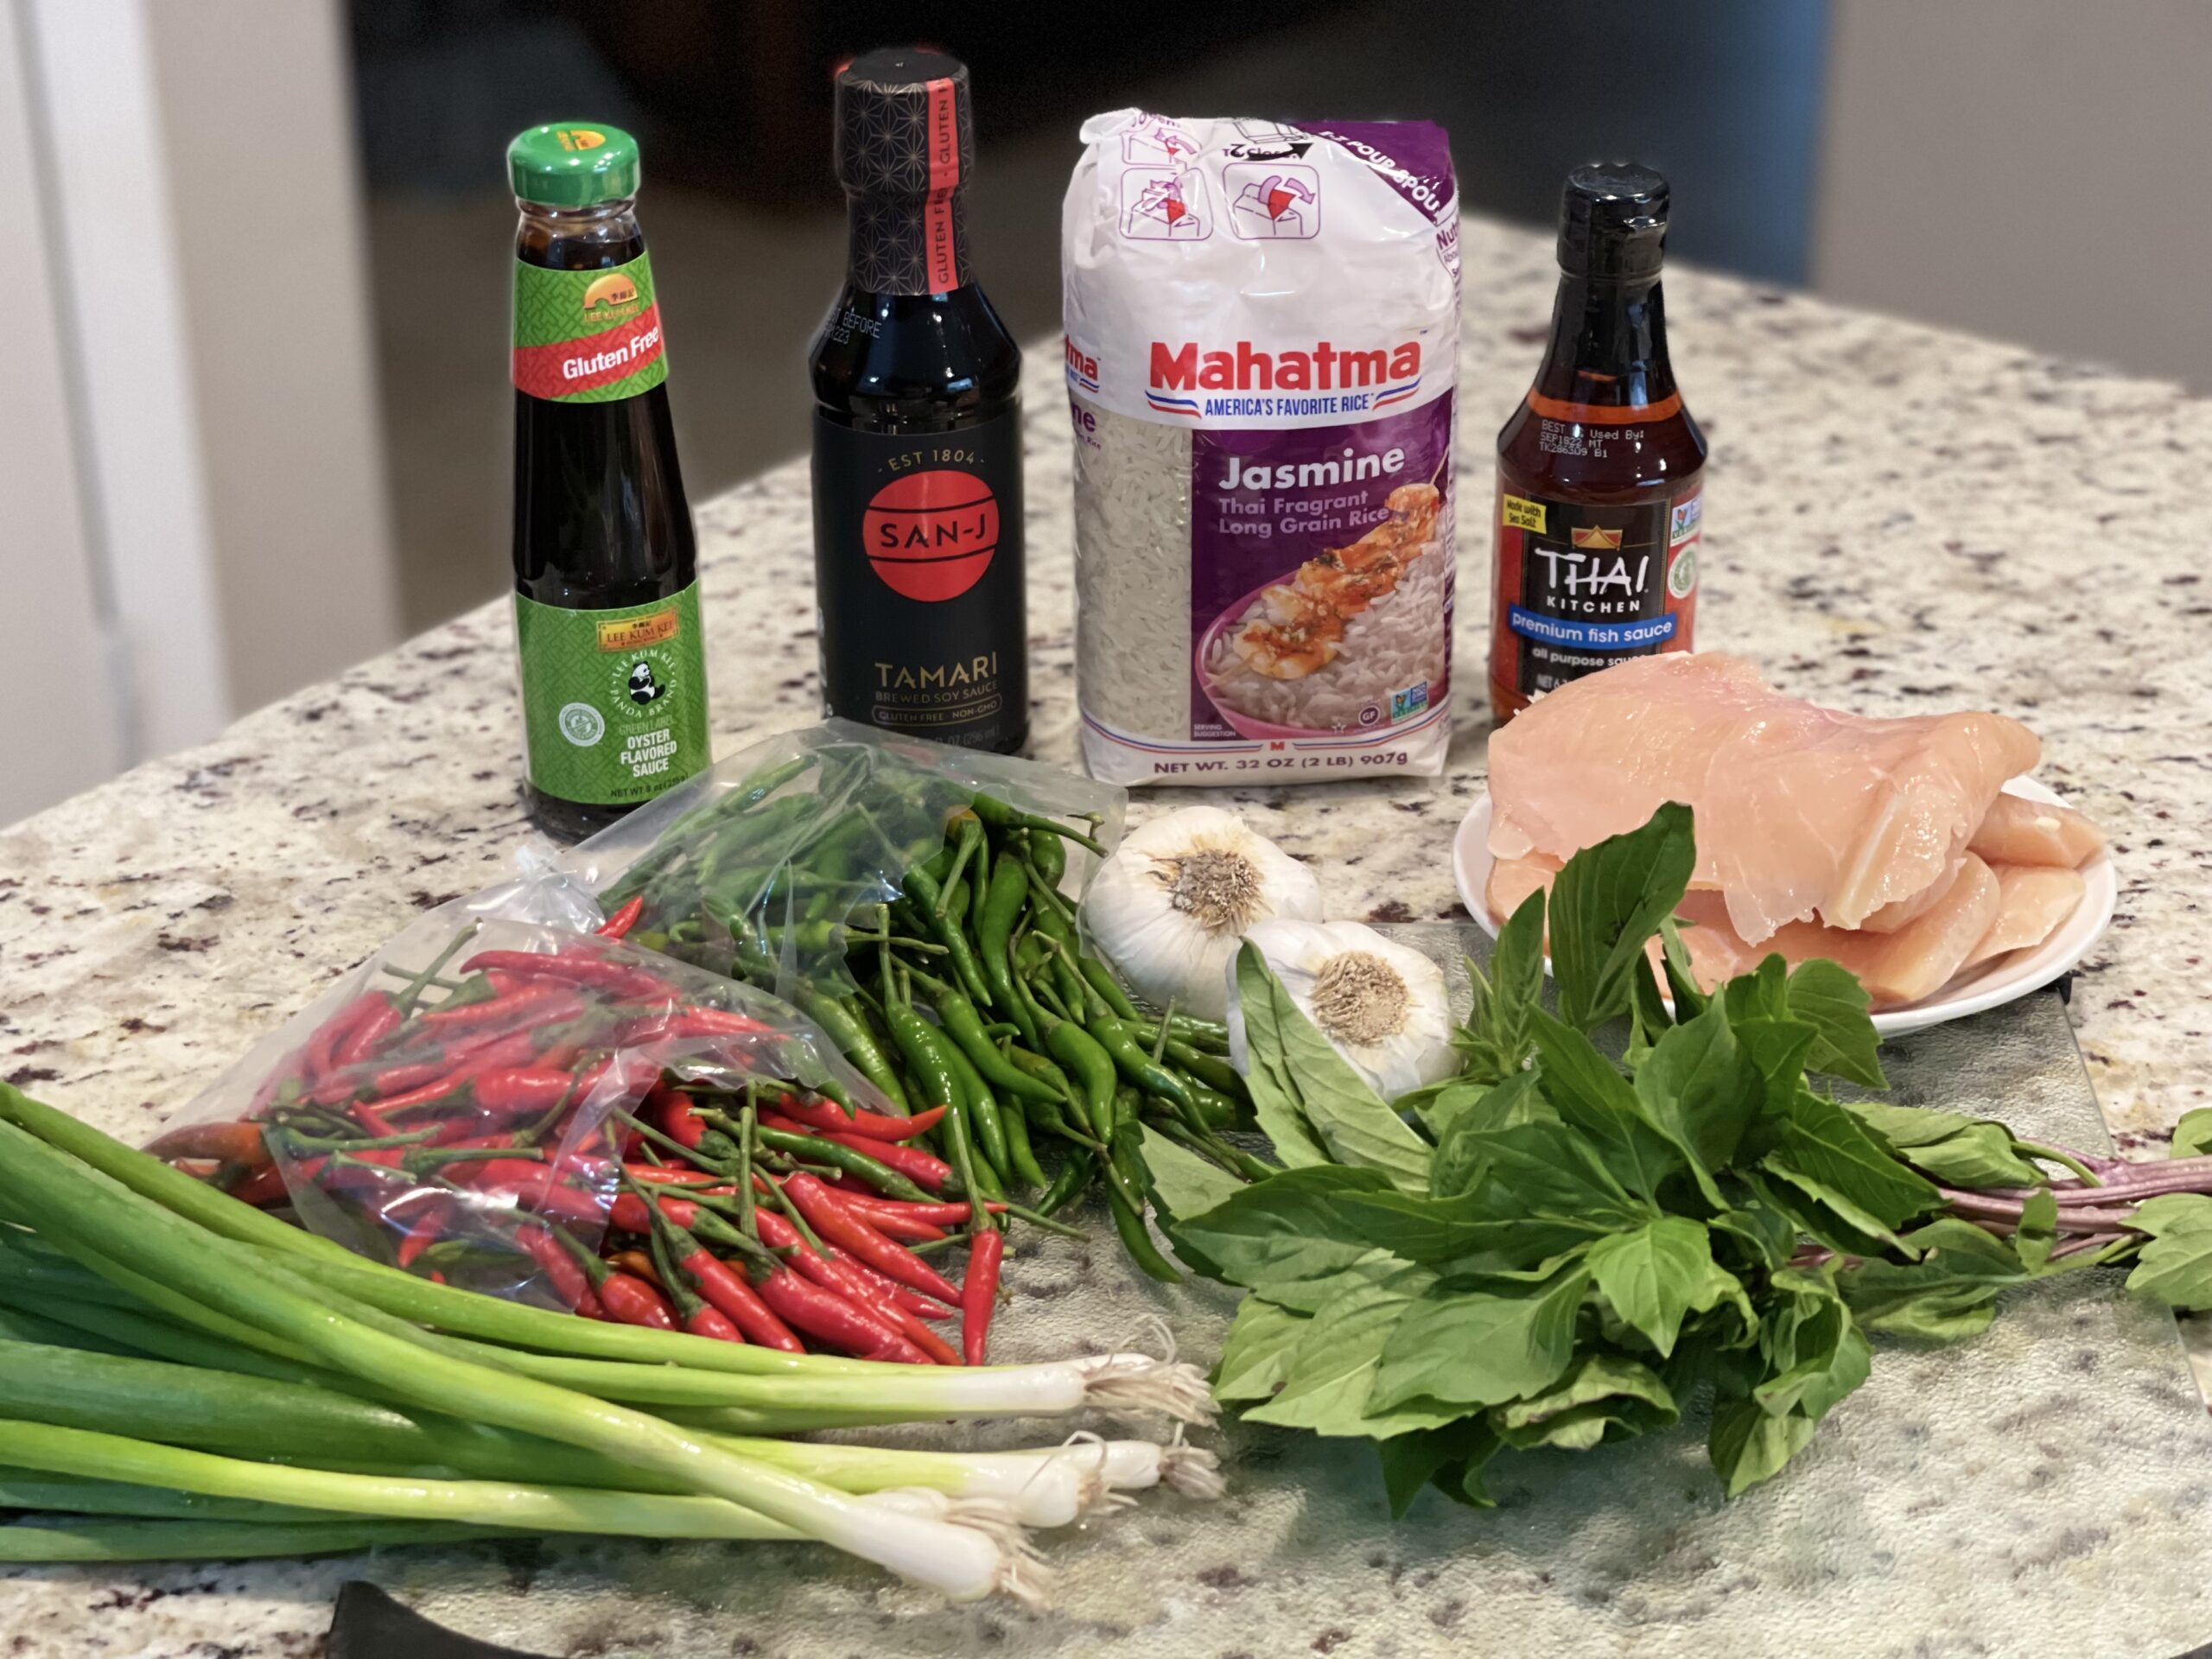 Ingredients gathered for making Spicy Gluten Free Thai Basil Chicken